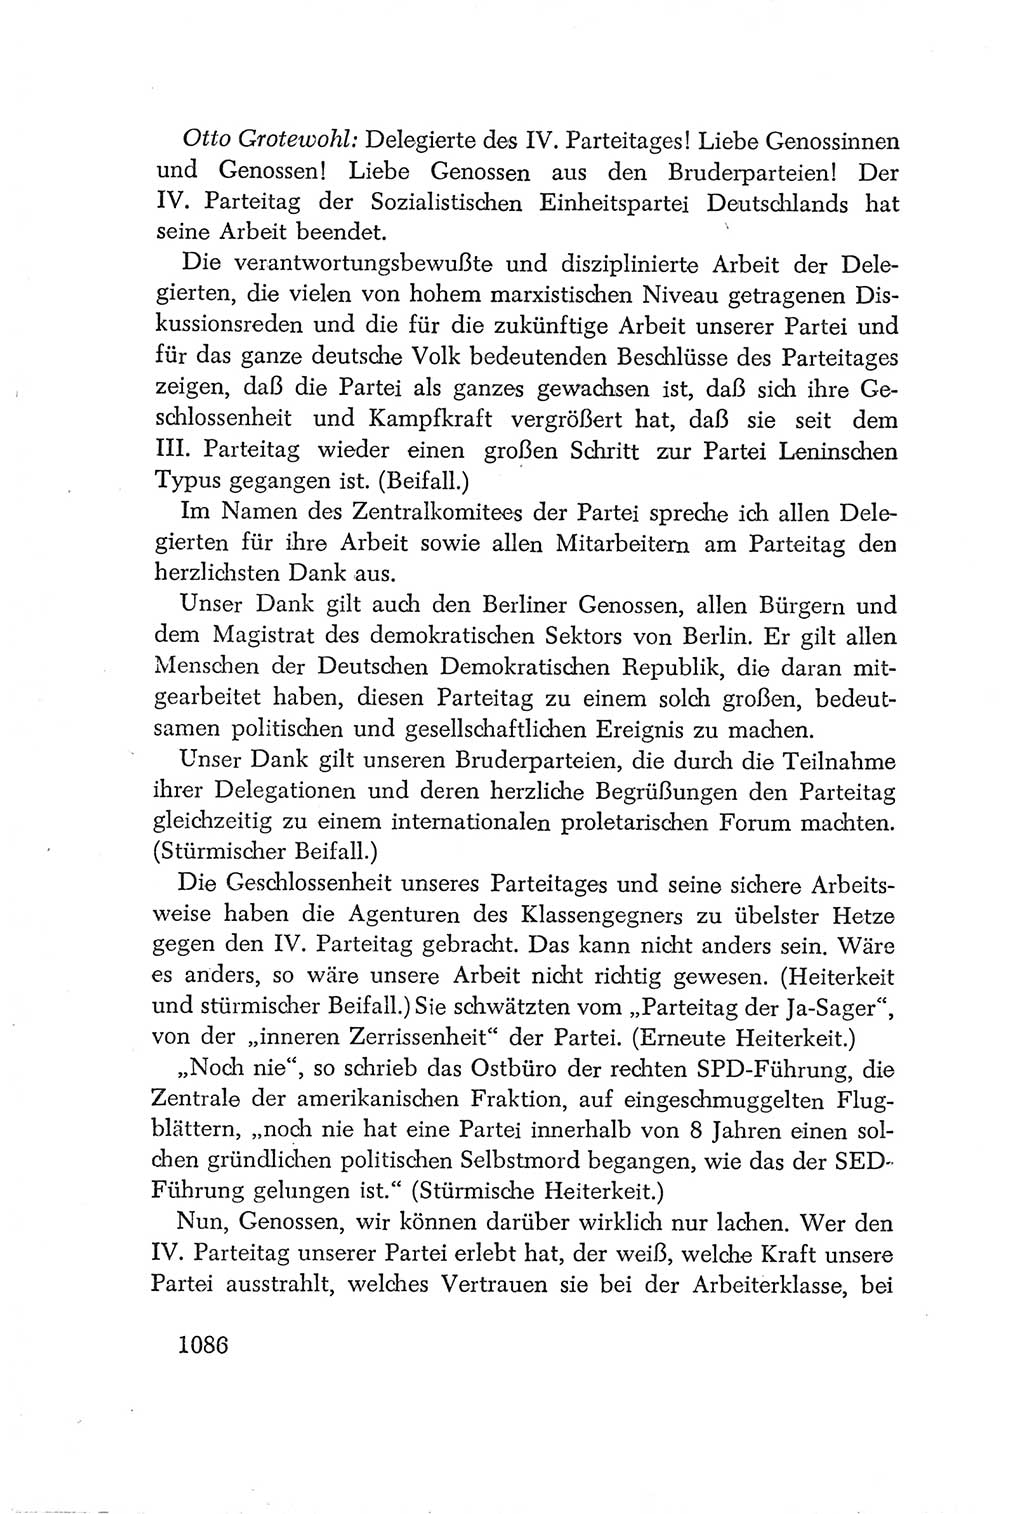 Protokoll der Verhandlungen des Ⅳ. Parteitages der Sozialistischen Einheitspartei Deutschlands (SED) [Deutsche Demokratische Republik (DDR)] 1954, Seite 1086